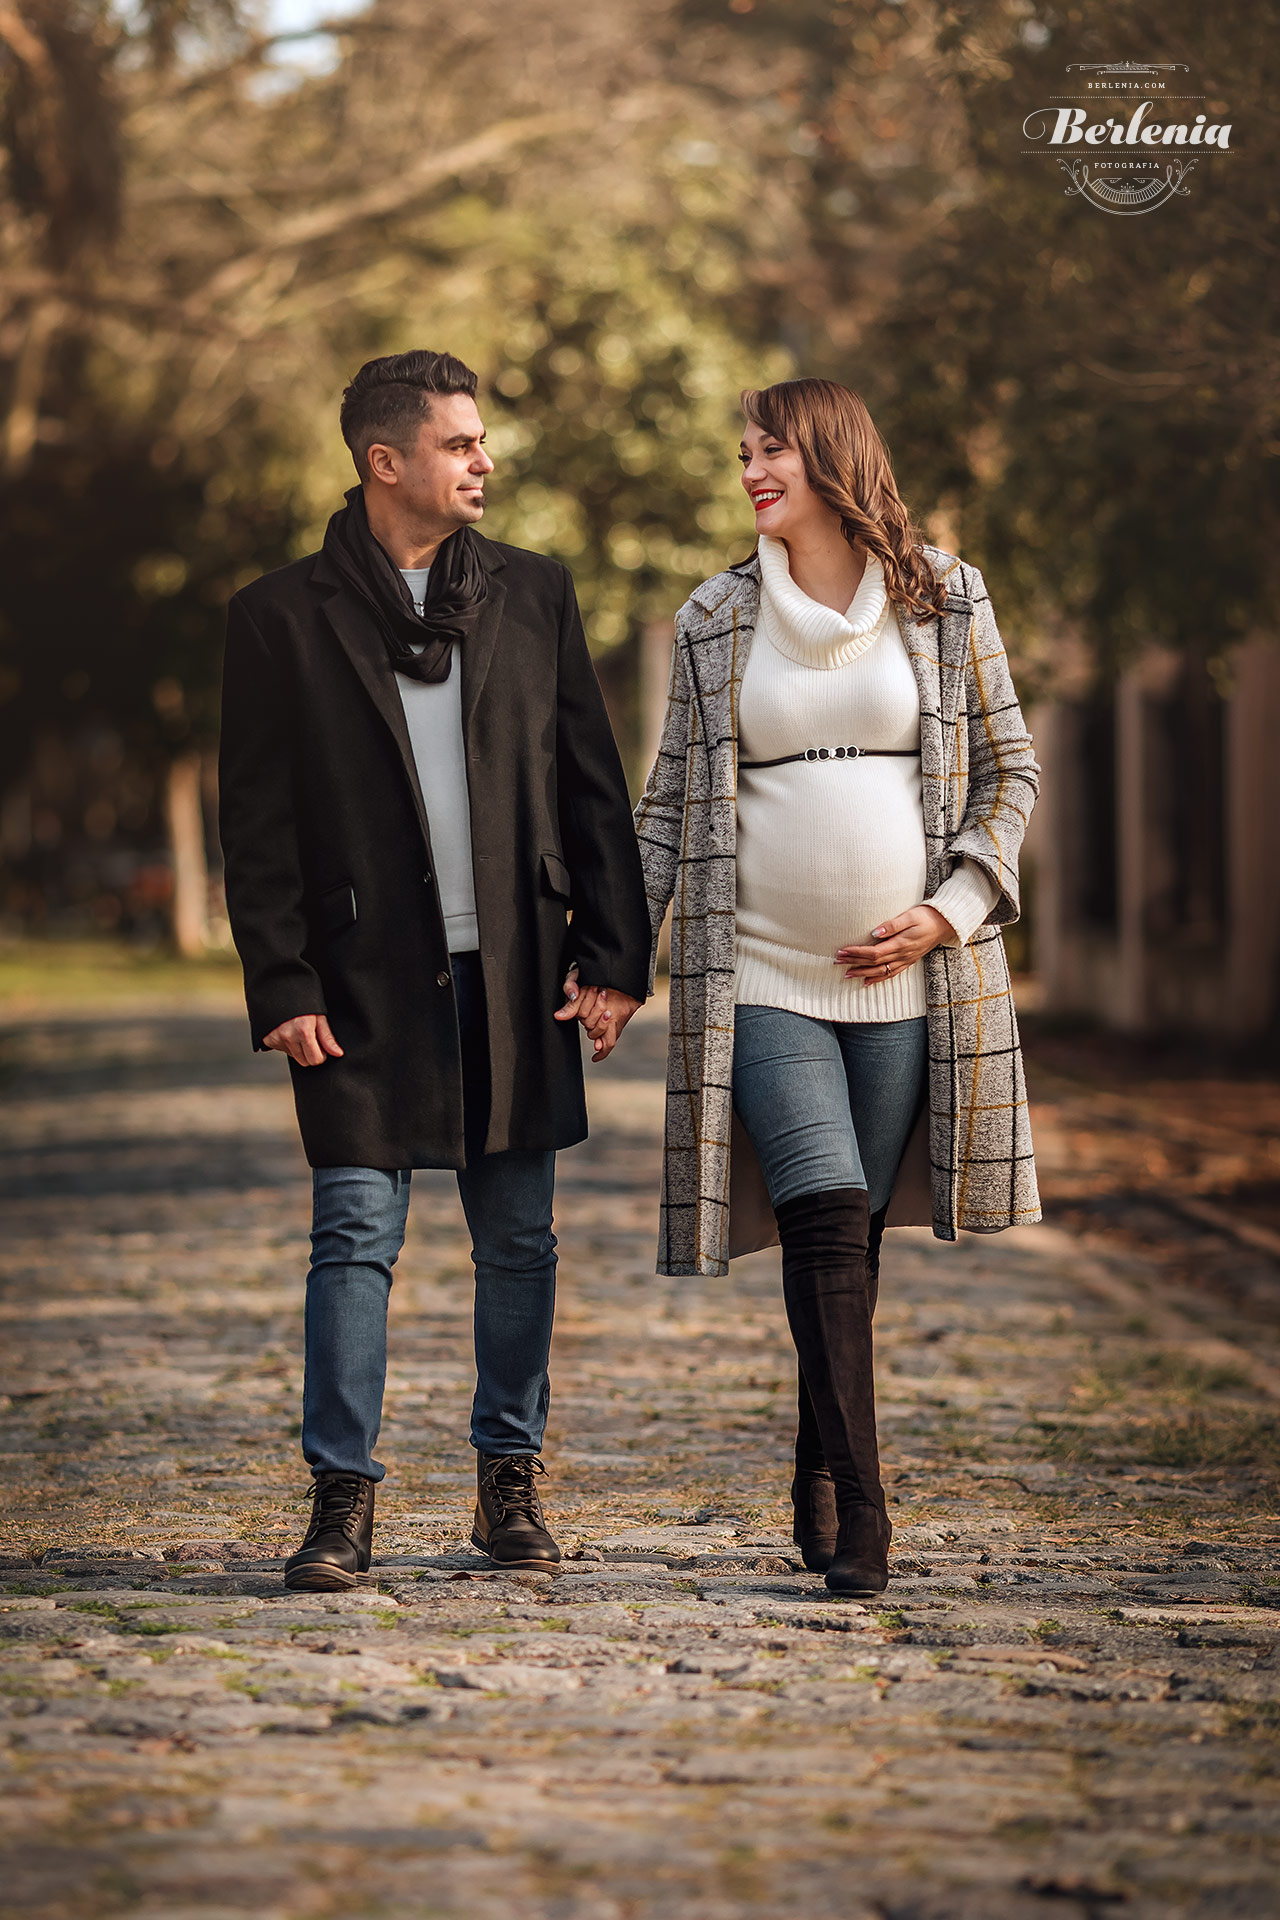 Fotografía de embarazo en invierno con pareja - Sesión de fotos embarazada en exterior - Palermo, CABA, Buenos Aires, Argentina - Berlenia Fotografía - 11